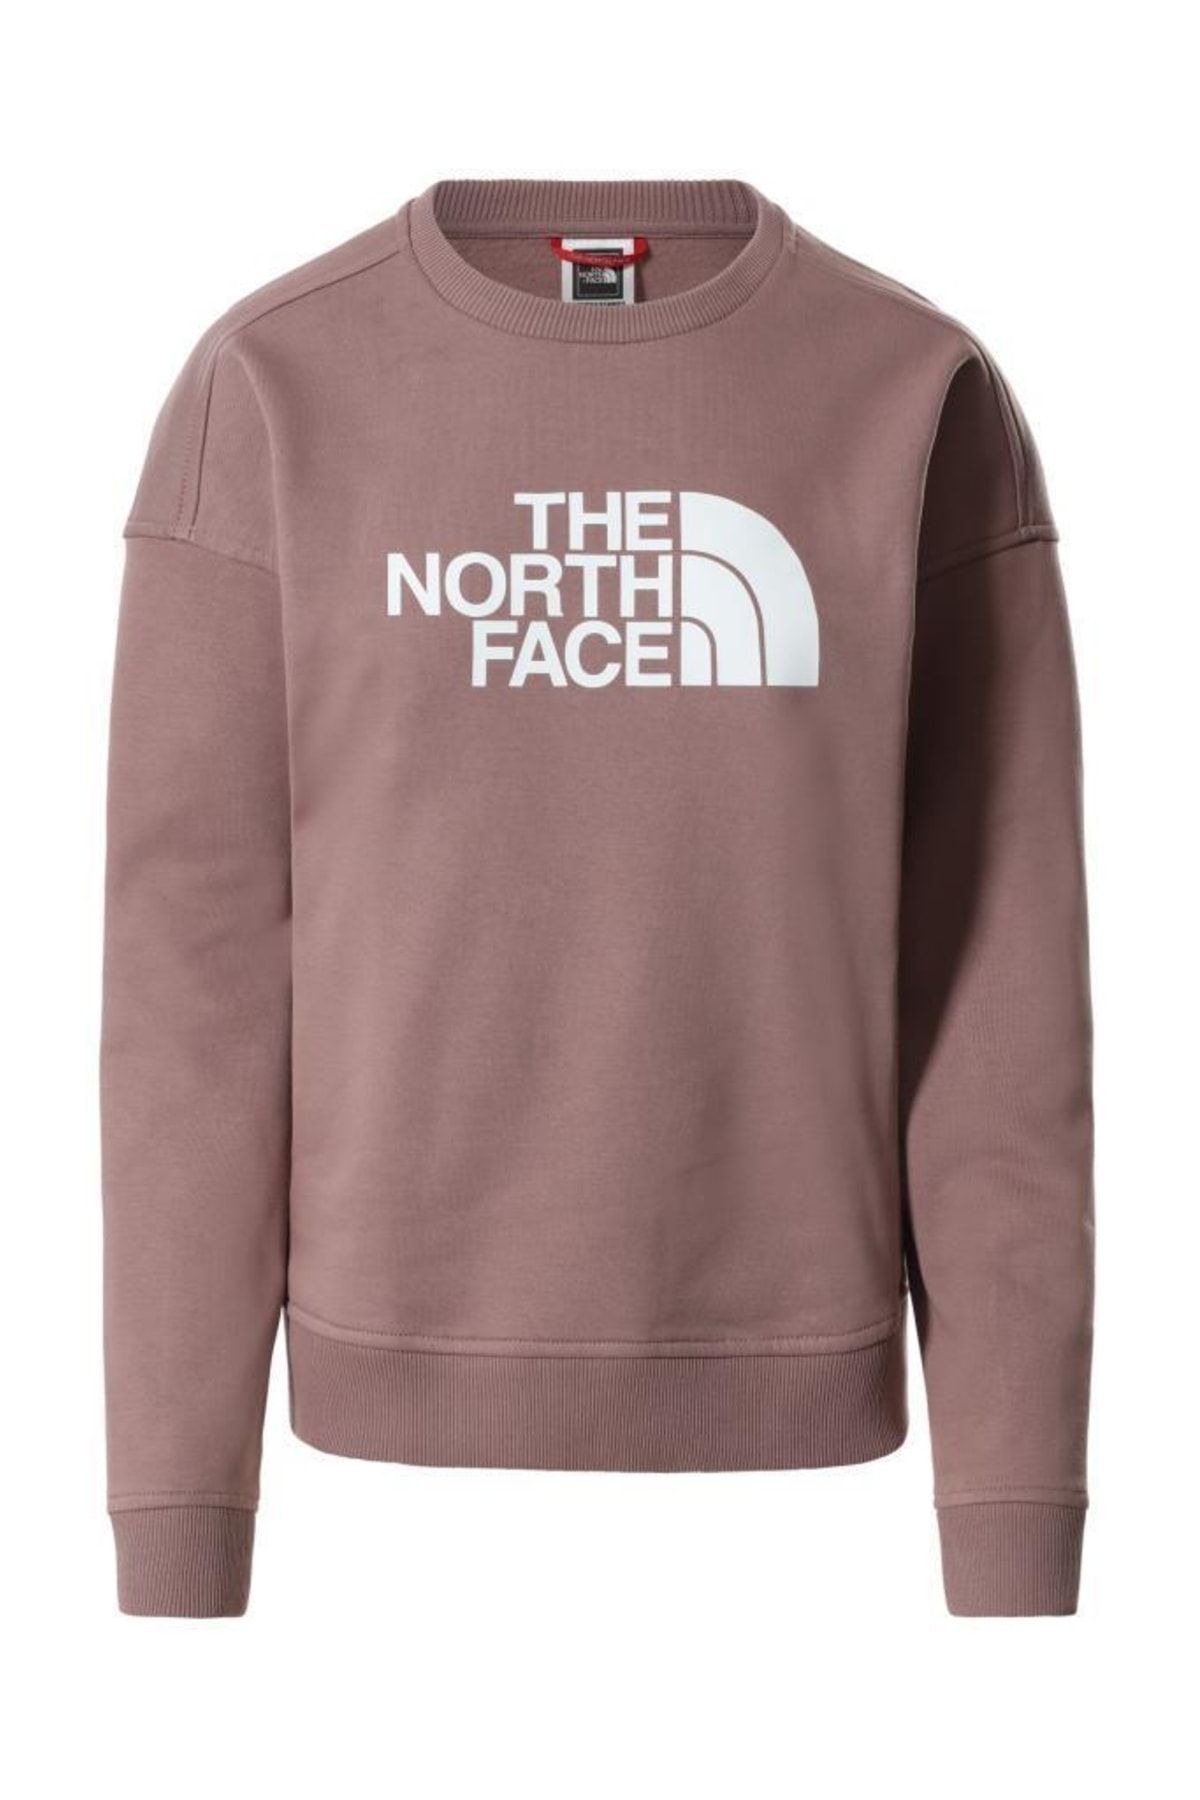 The North Face Drew Peak Crew Kadın Sweatshirt Gül Kurusu